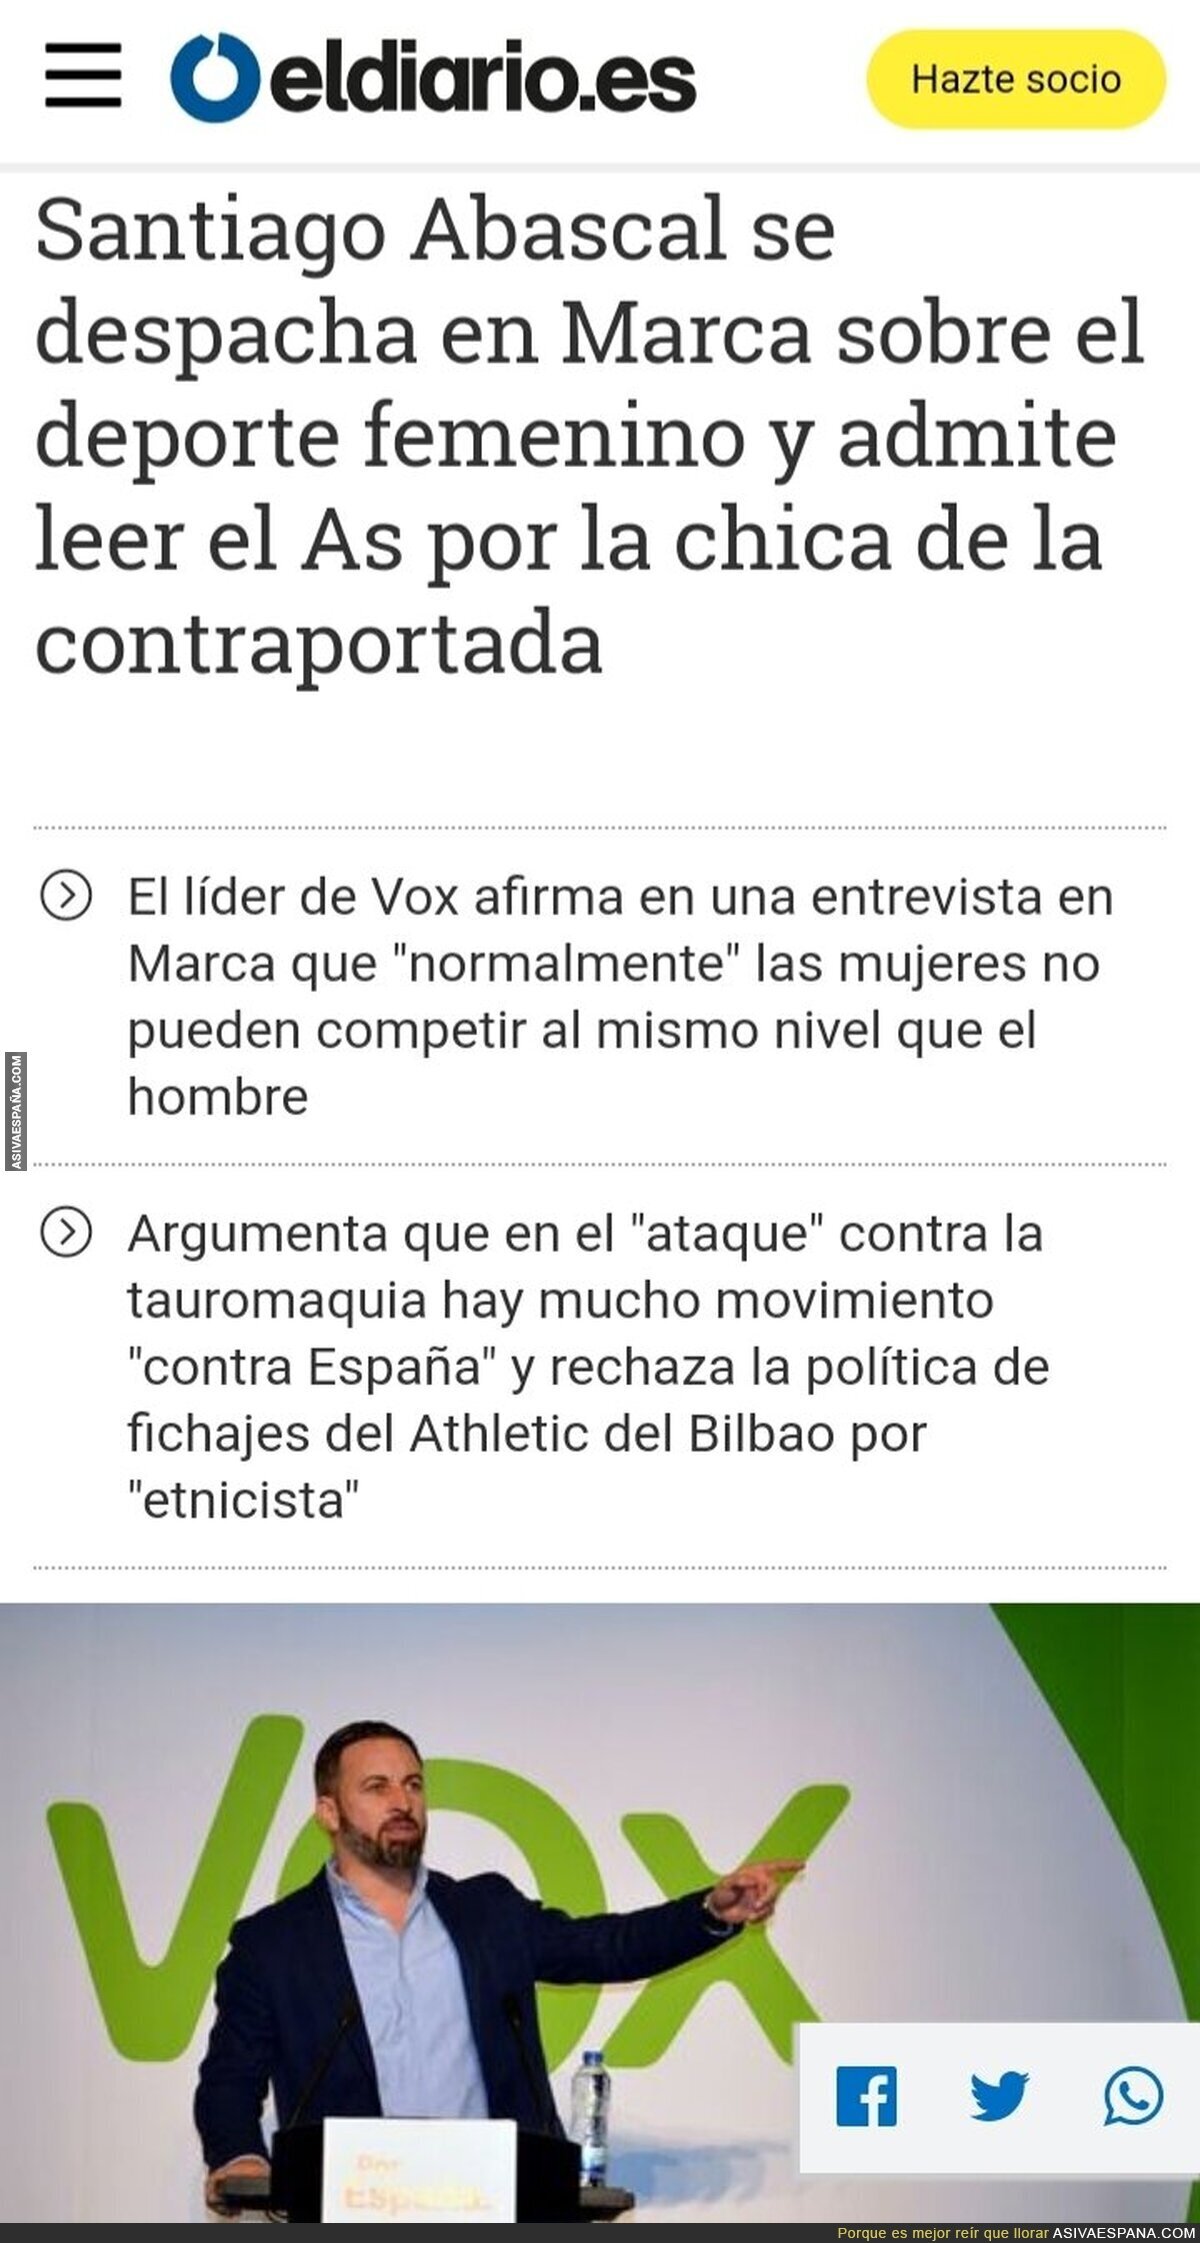 Santiago Abascal y su afición por leer el AS